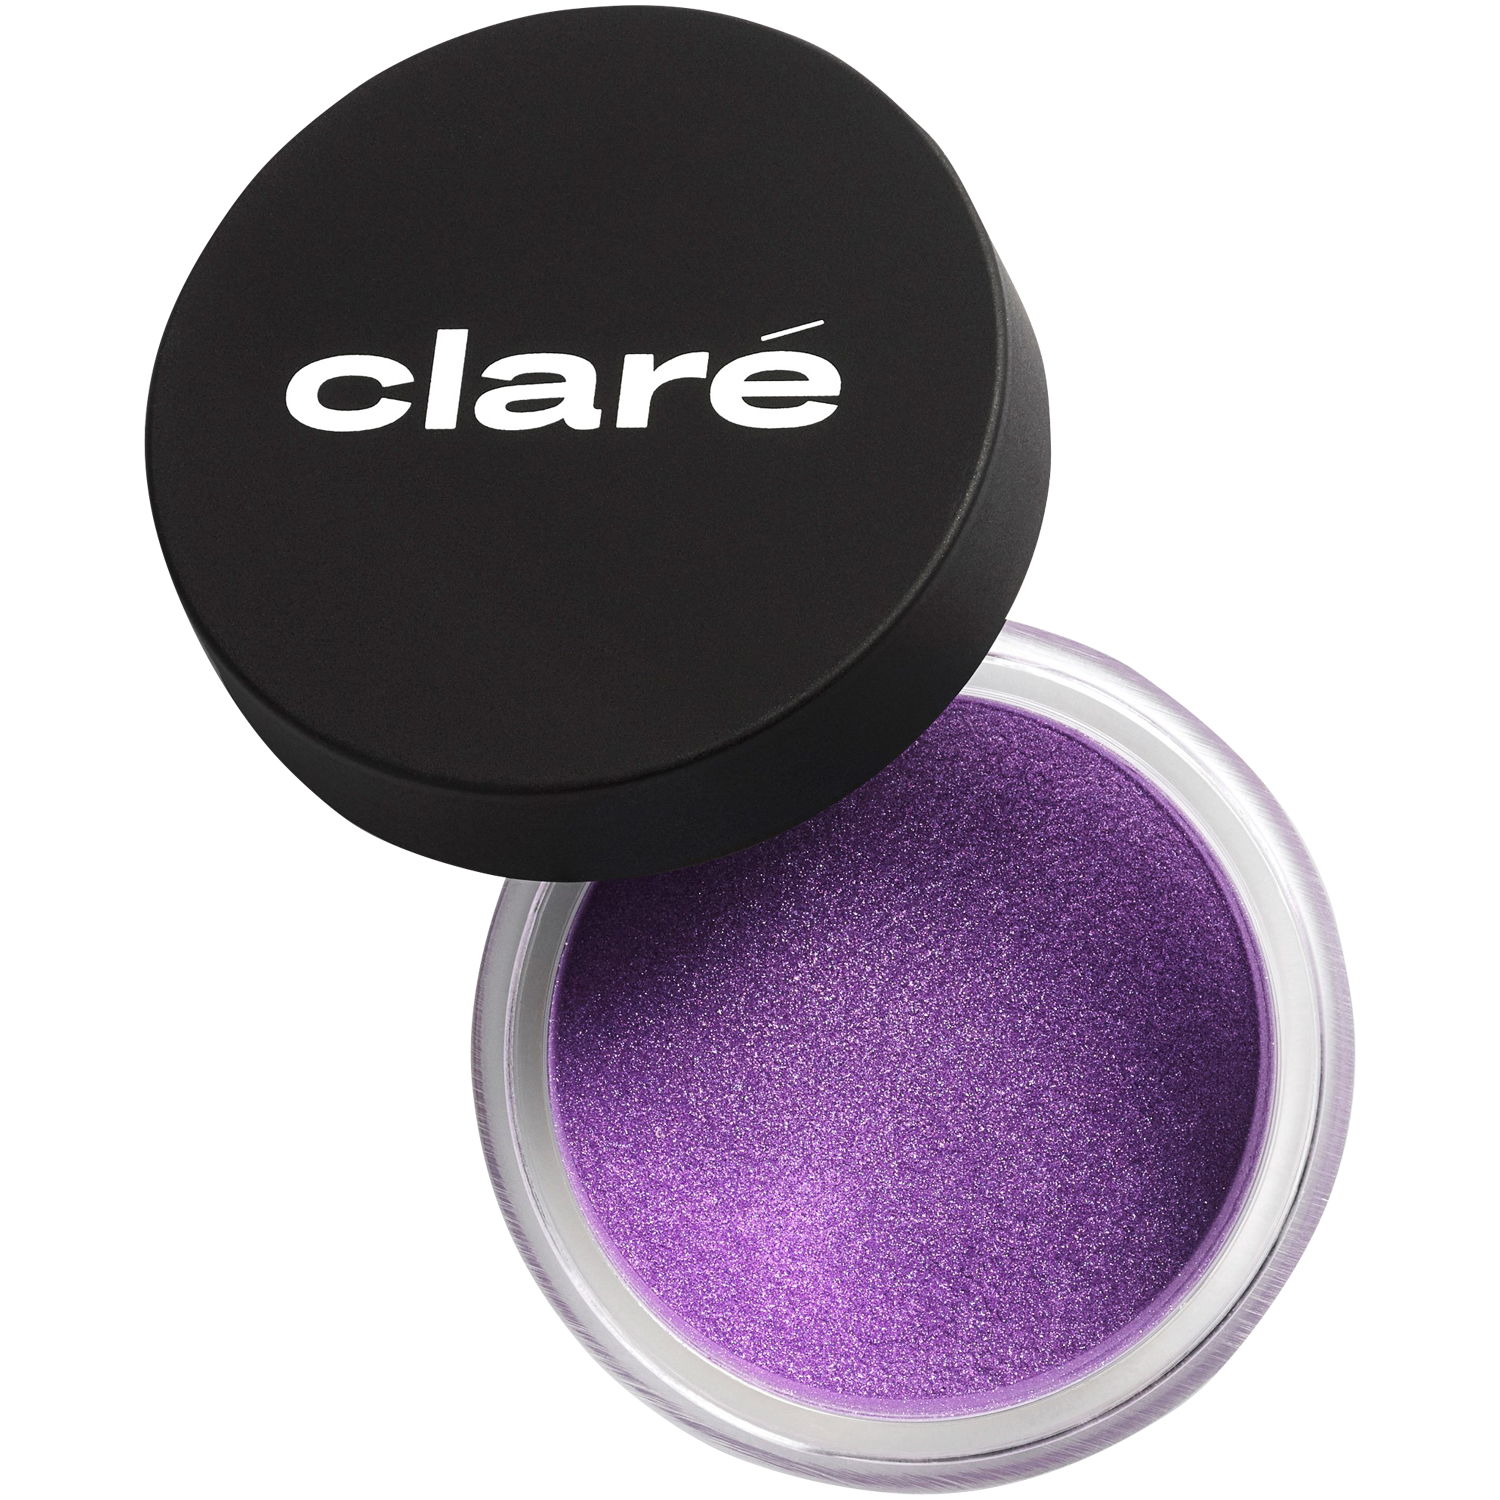 Атласные тени для век лаванда 879 Claré Clare Makeup, 1 гр атласные тени для век холодного телесного цвета 900 claré clare makeup 1 гр